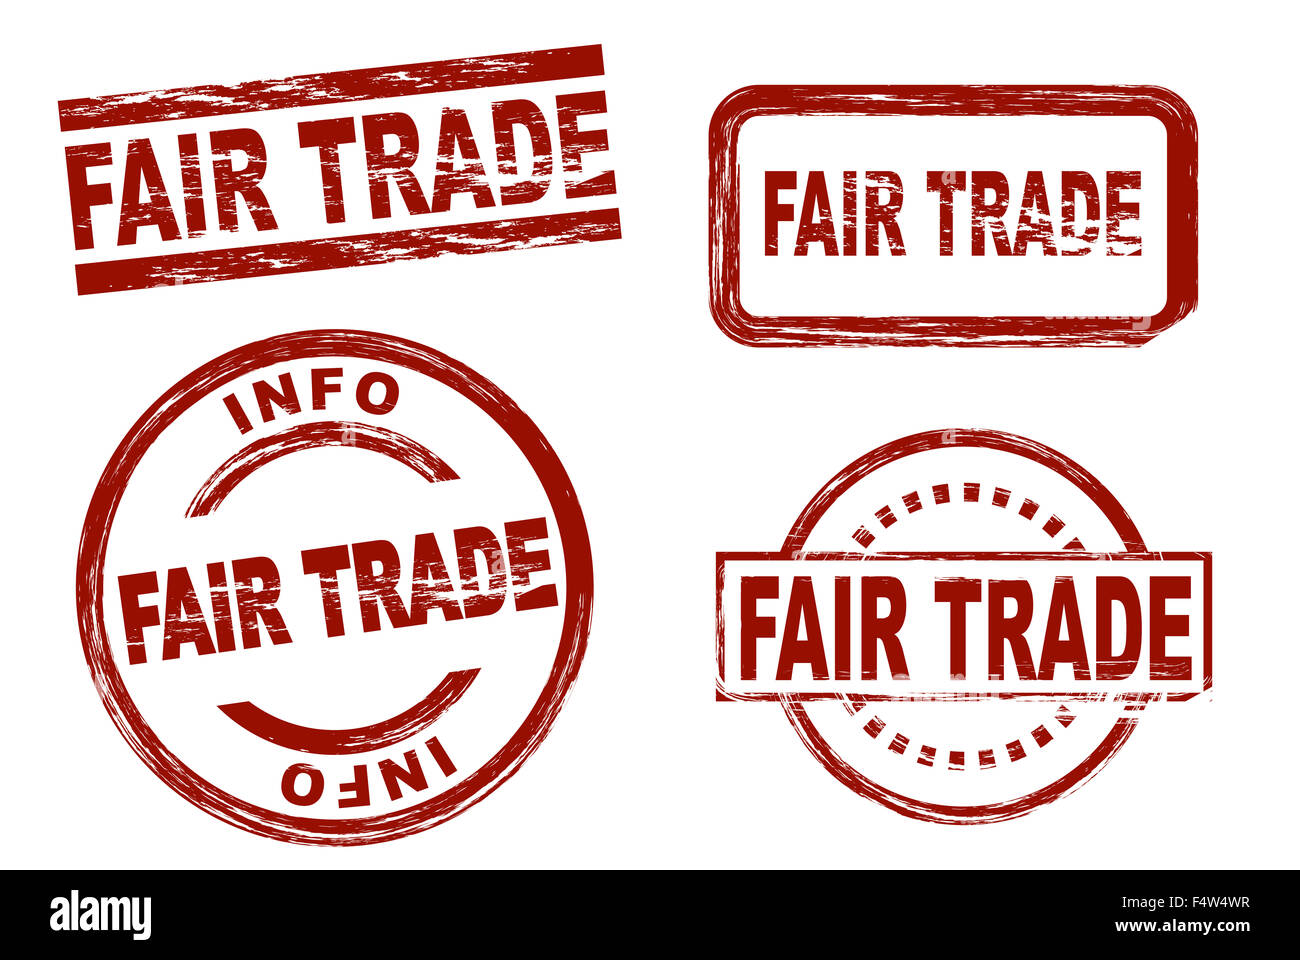 Satz von stilisierten roten Stempel zeigt der Begriff Fairtrade. Alle auf weißem Hintergrund. Stockfoto